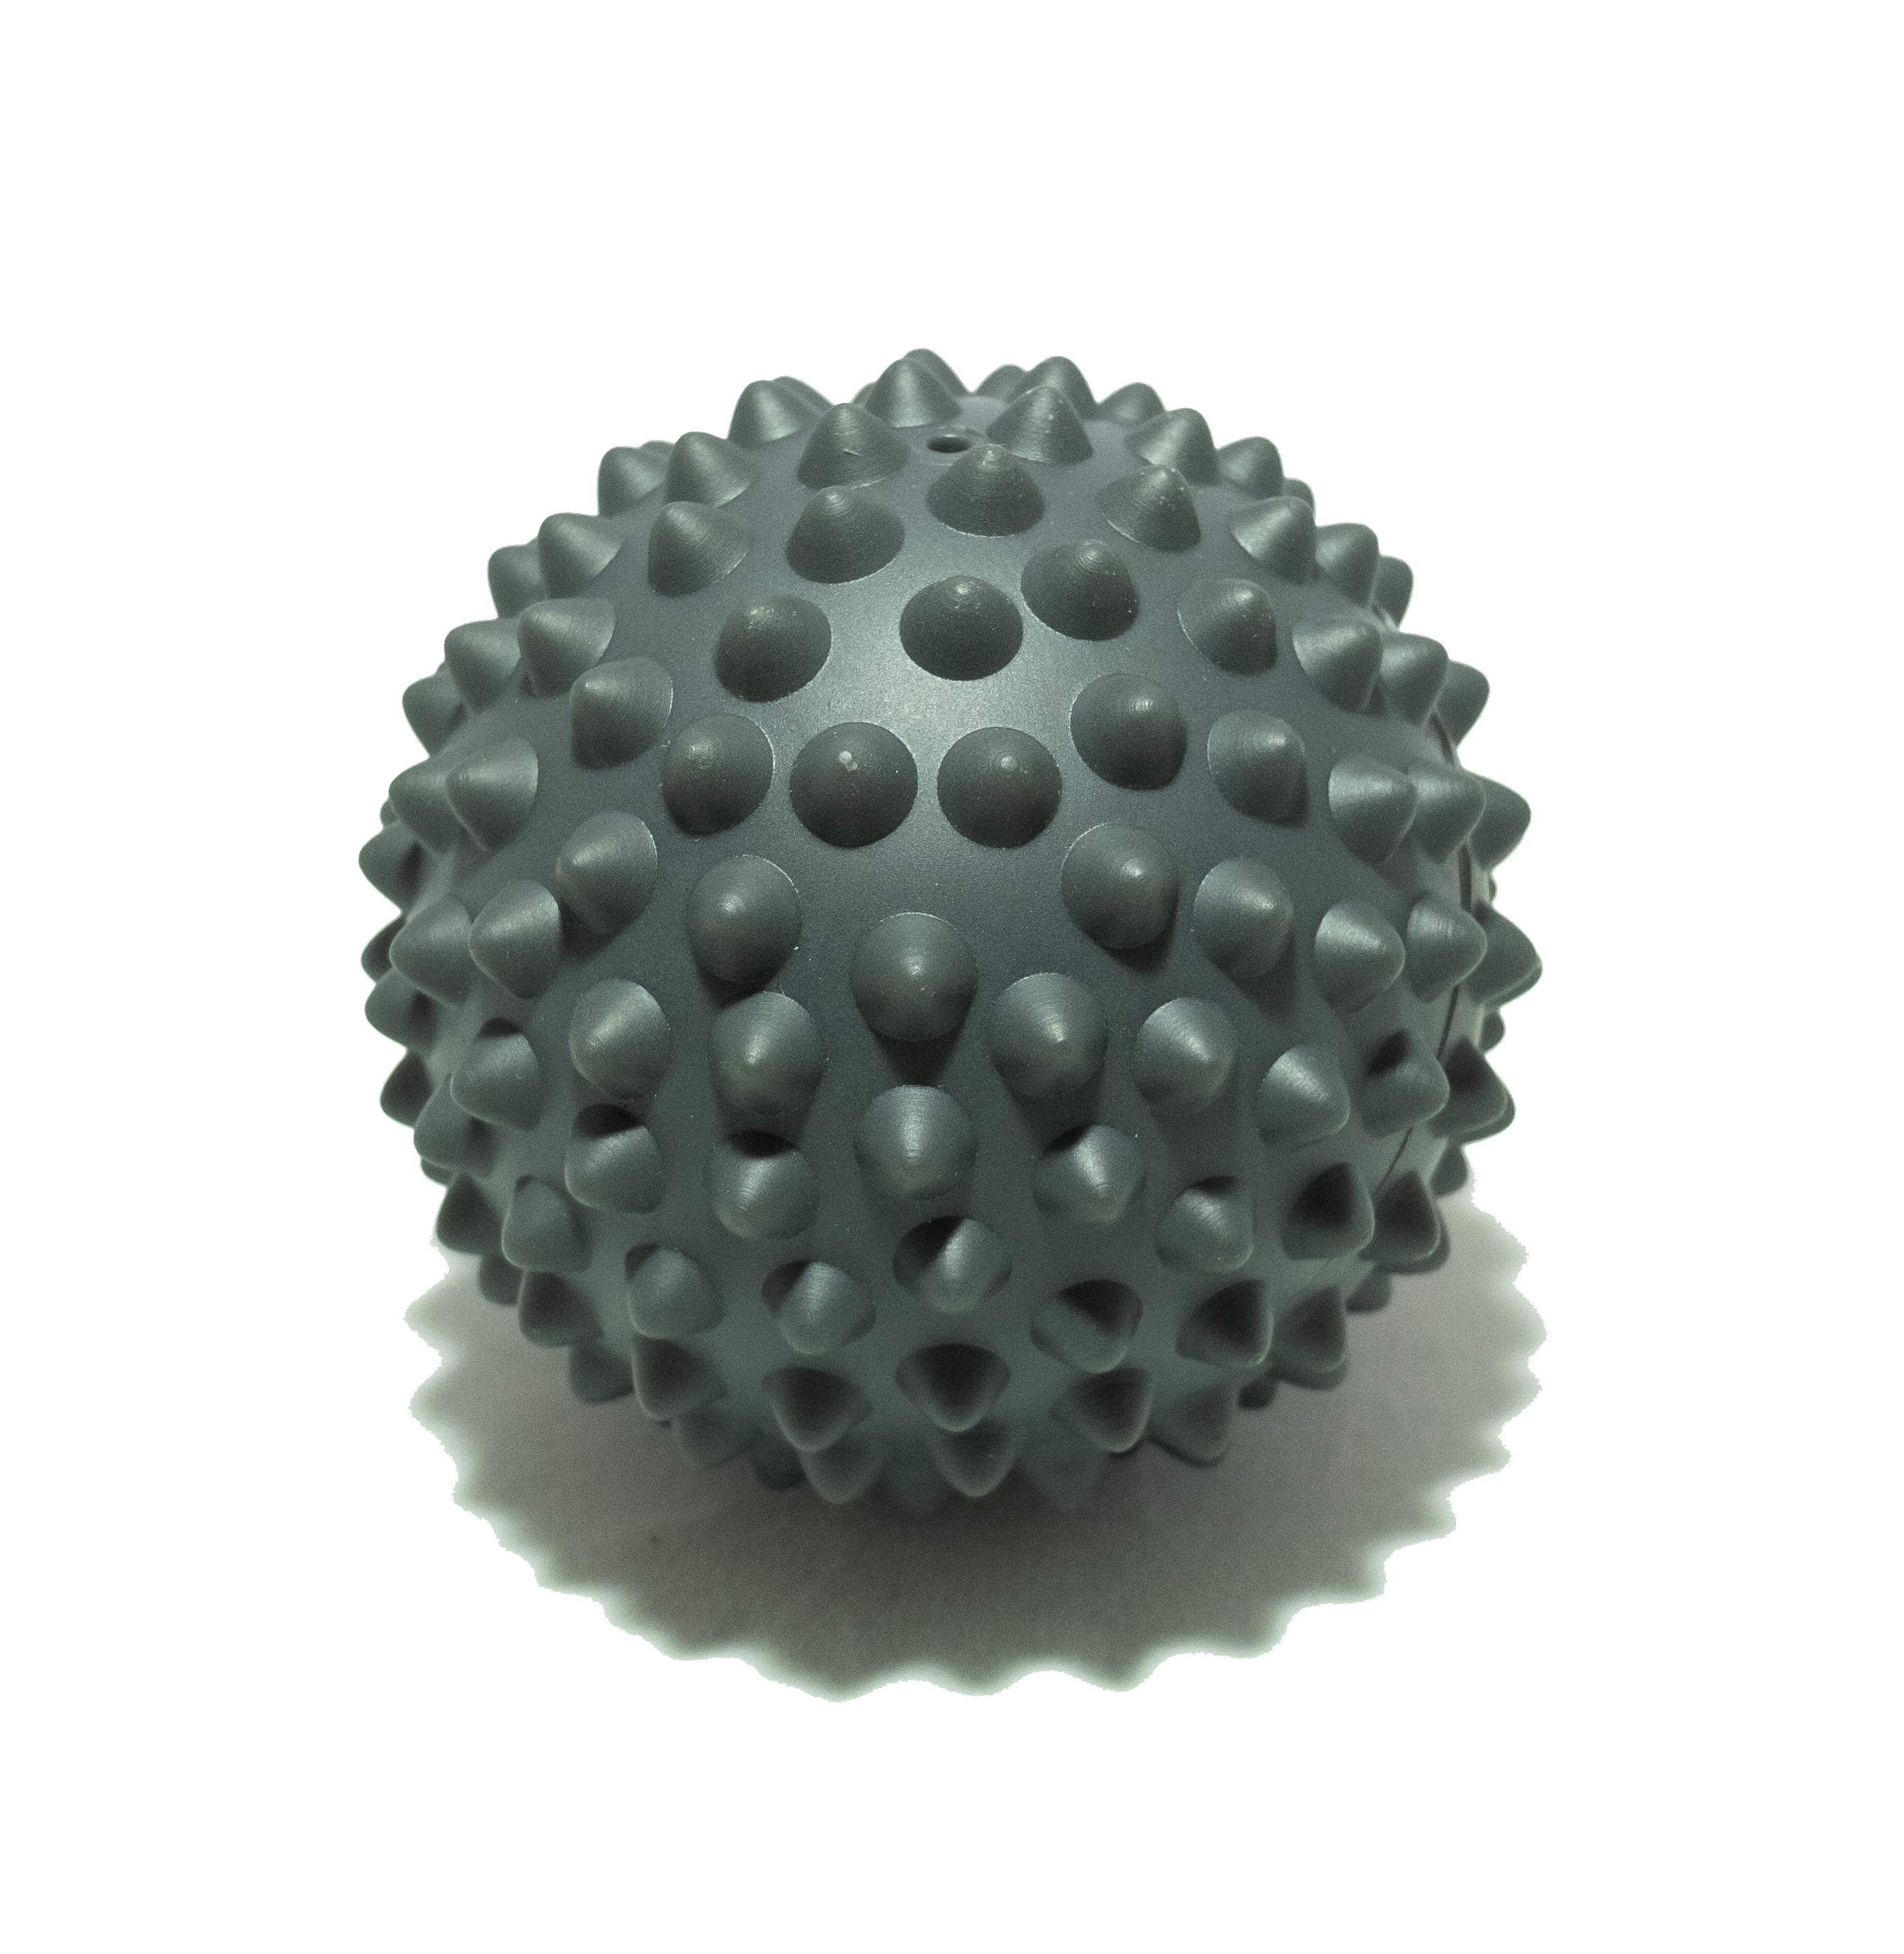 Мяч массажный для мфр. Массажный мяч для МФР. Массажный мячик для МФР. Массажный мяч 9 см mm9 Крейт. Мяч для МФР Starfit RB-201 9 см, PVC, массажный, серый.